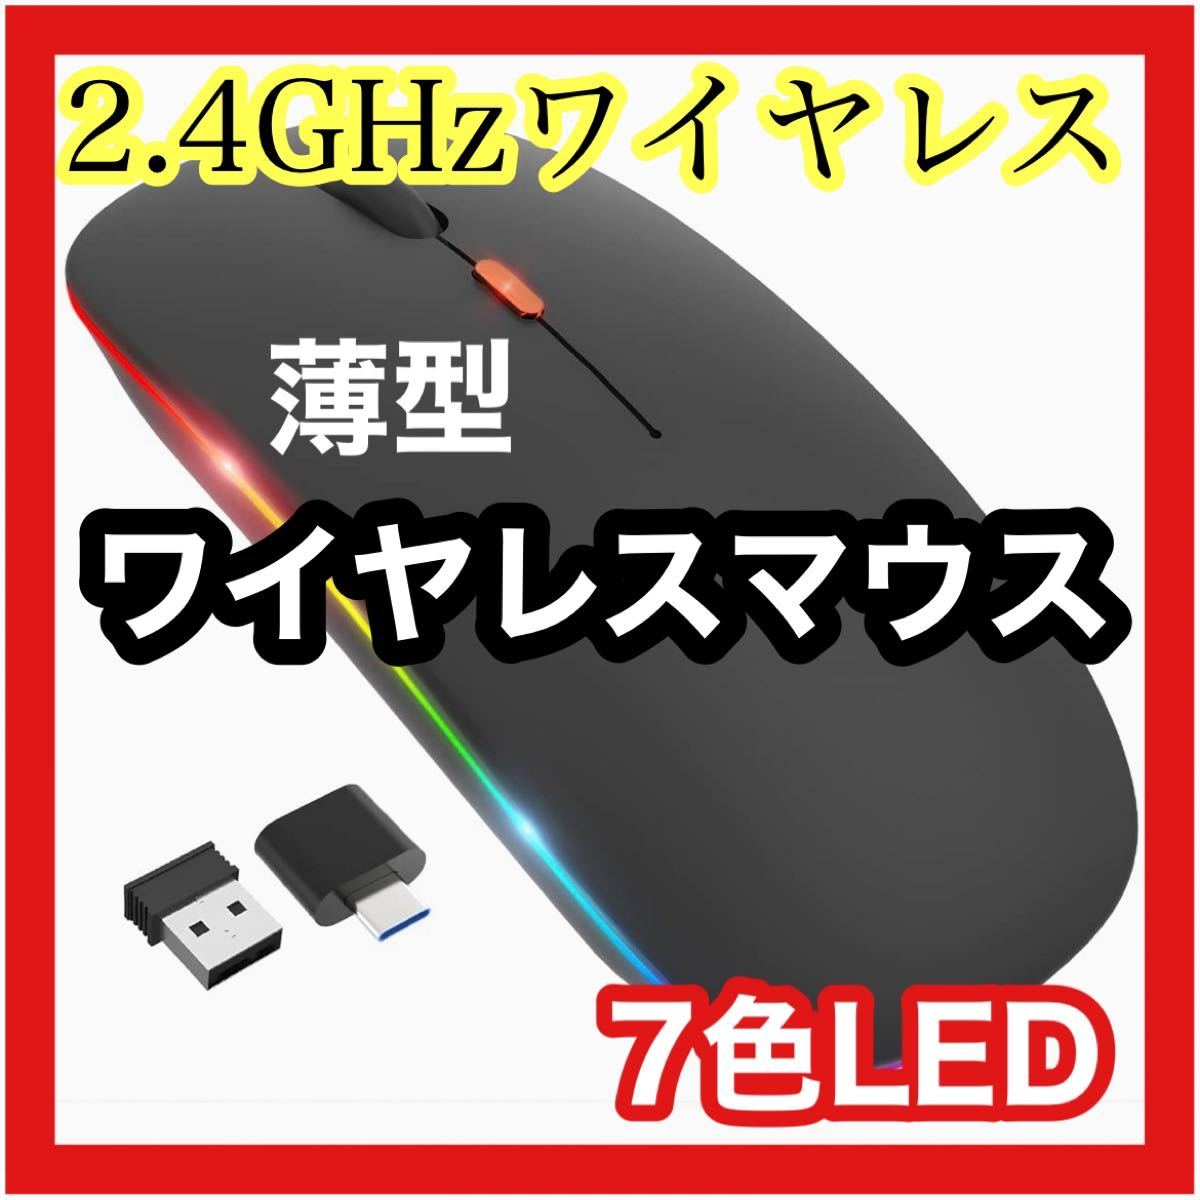 ワイヤレスマウス 薄型 無線マウス ワイヤレス マウス USB 充電式 軽量